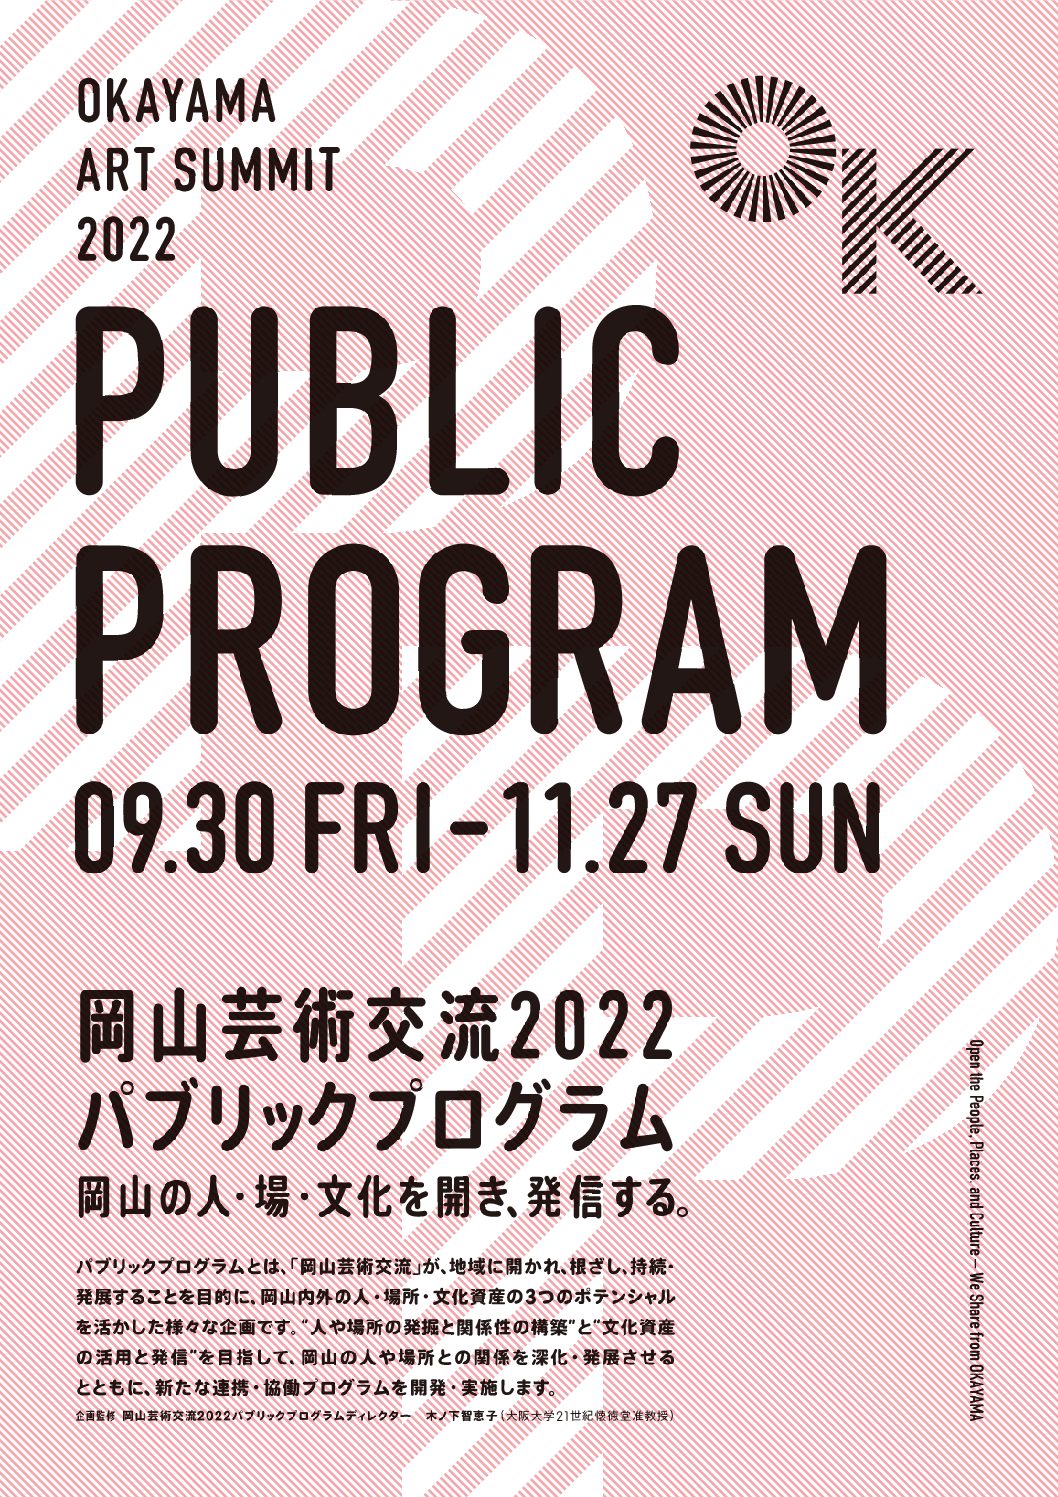 岡山芸術交流２０２２パブリックプログラム全体概要を発表します